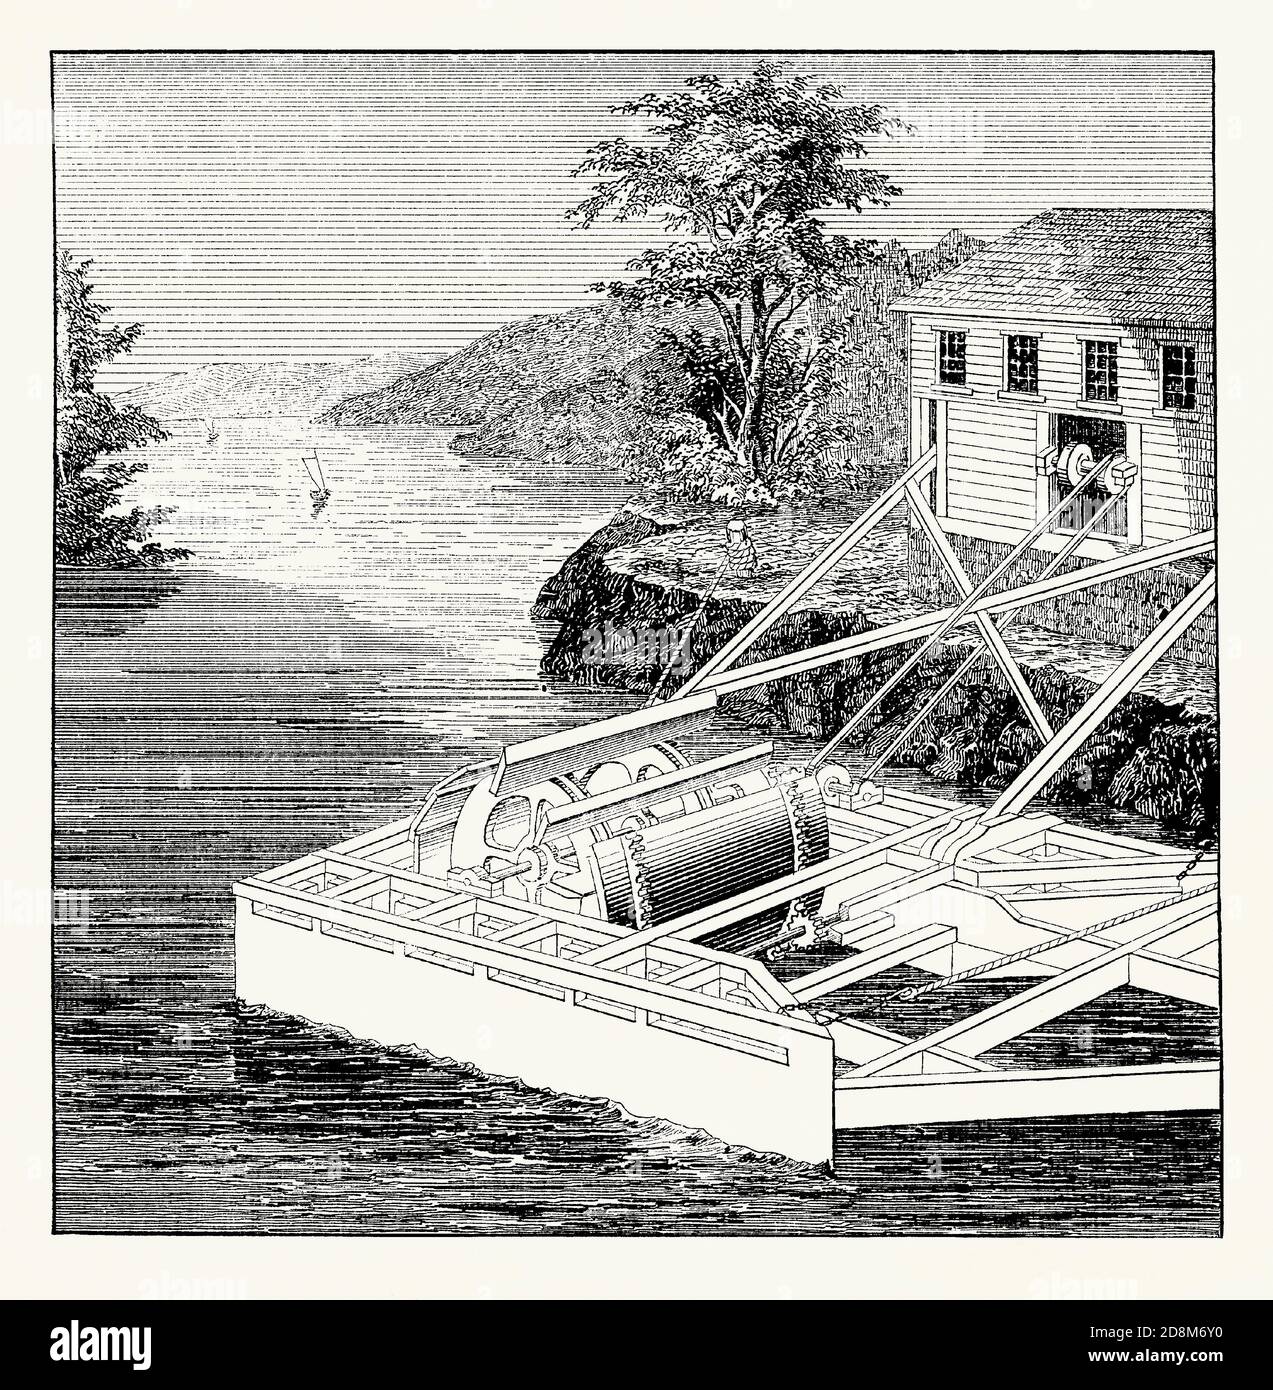 Eine alte Gravur eines aktuellen Rades (oder Turbine) im 19. Jahrhundert. Es ist aus einem viktorianischen Maschinenbaubuch der 1880er Jahre. Ein Wasserrad (Strömungsrad oder Gezeitenmühle – oder ‘alten Zeiten eine „Noria“) ist eine Maschine zur Umwandlung der Energie von fließendem Wasser in nützliche Formen der Kraft, oft beim Fräsen. Ein Strom-, Strom- oder Gezeitenrad ist ein vertikal montiertes Wasserrad, das von den Wasserpaddeln oder -Schaufeln am Boden des Rades gedreht wird. Diese Art von Wasserrad ist die älteste Art von horizontalen Achsrad. Auf schwimmenden Plattformen montiert (wie hier) werden auch ‘Hüftrad’ genannt. Stockfoto